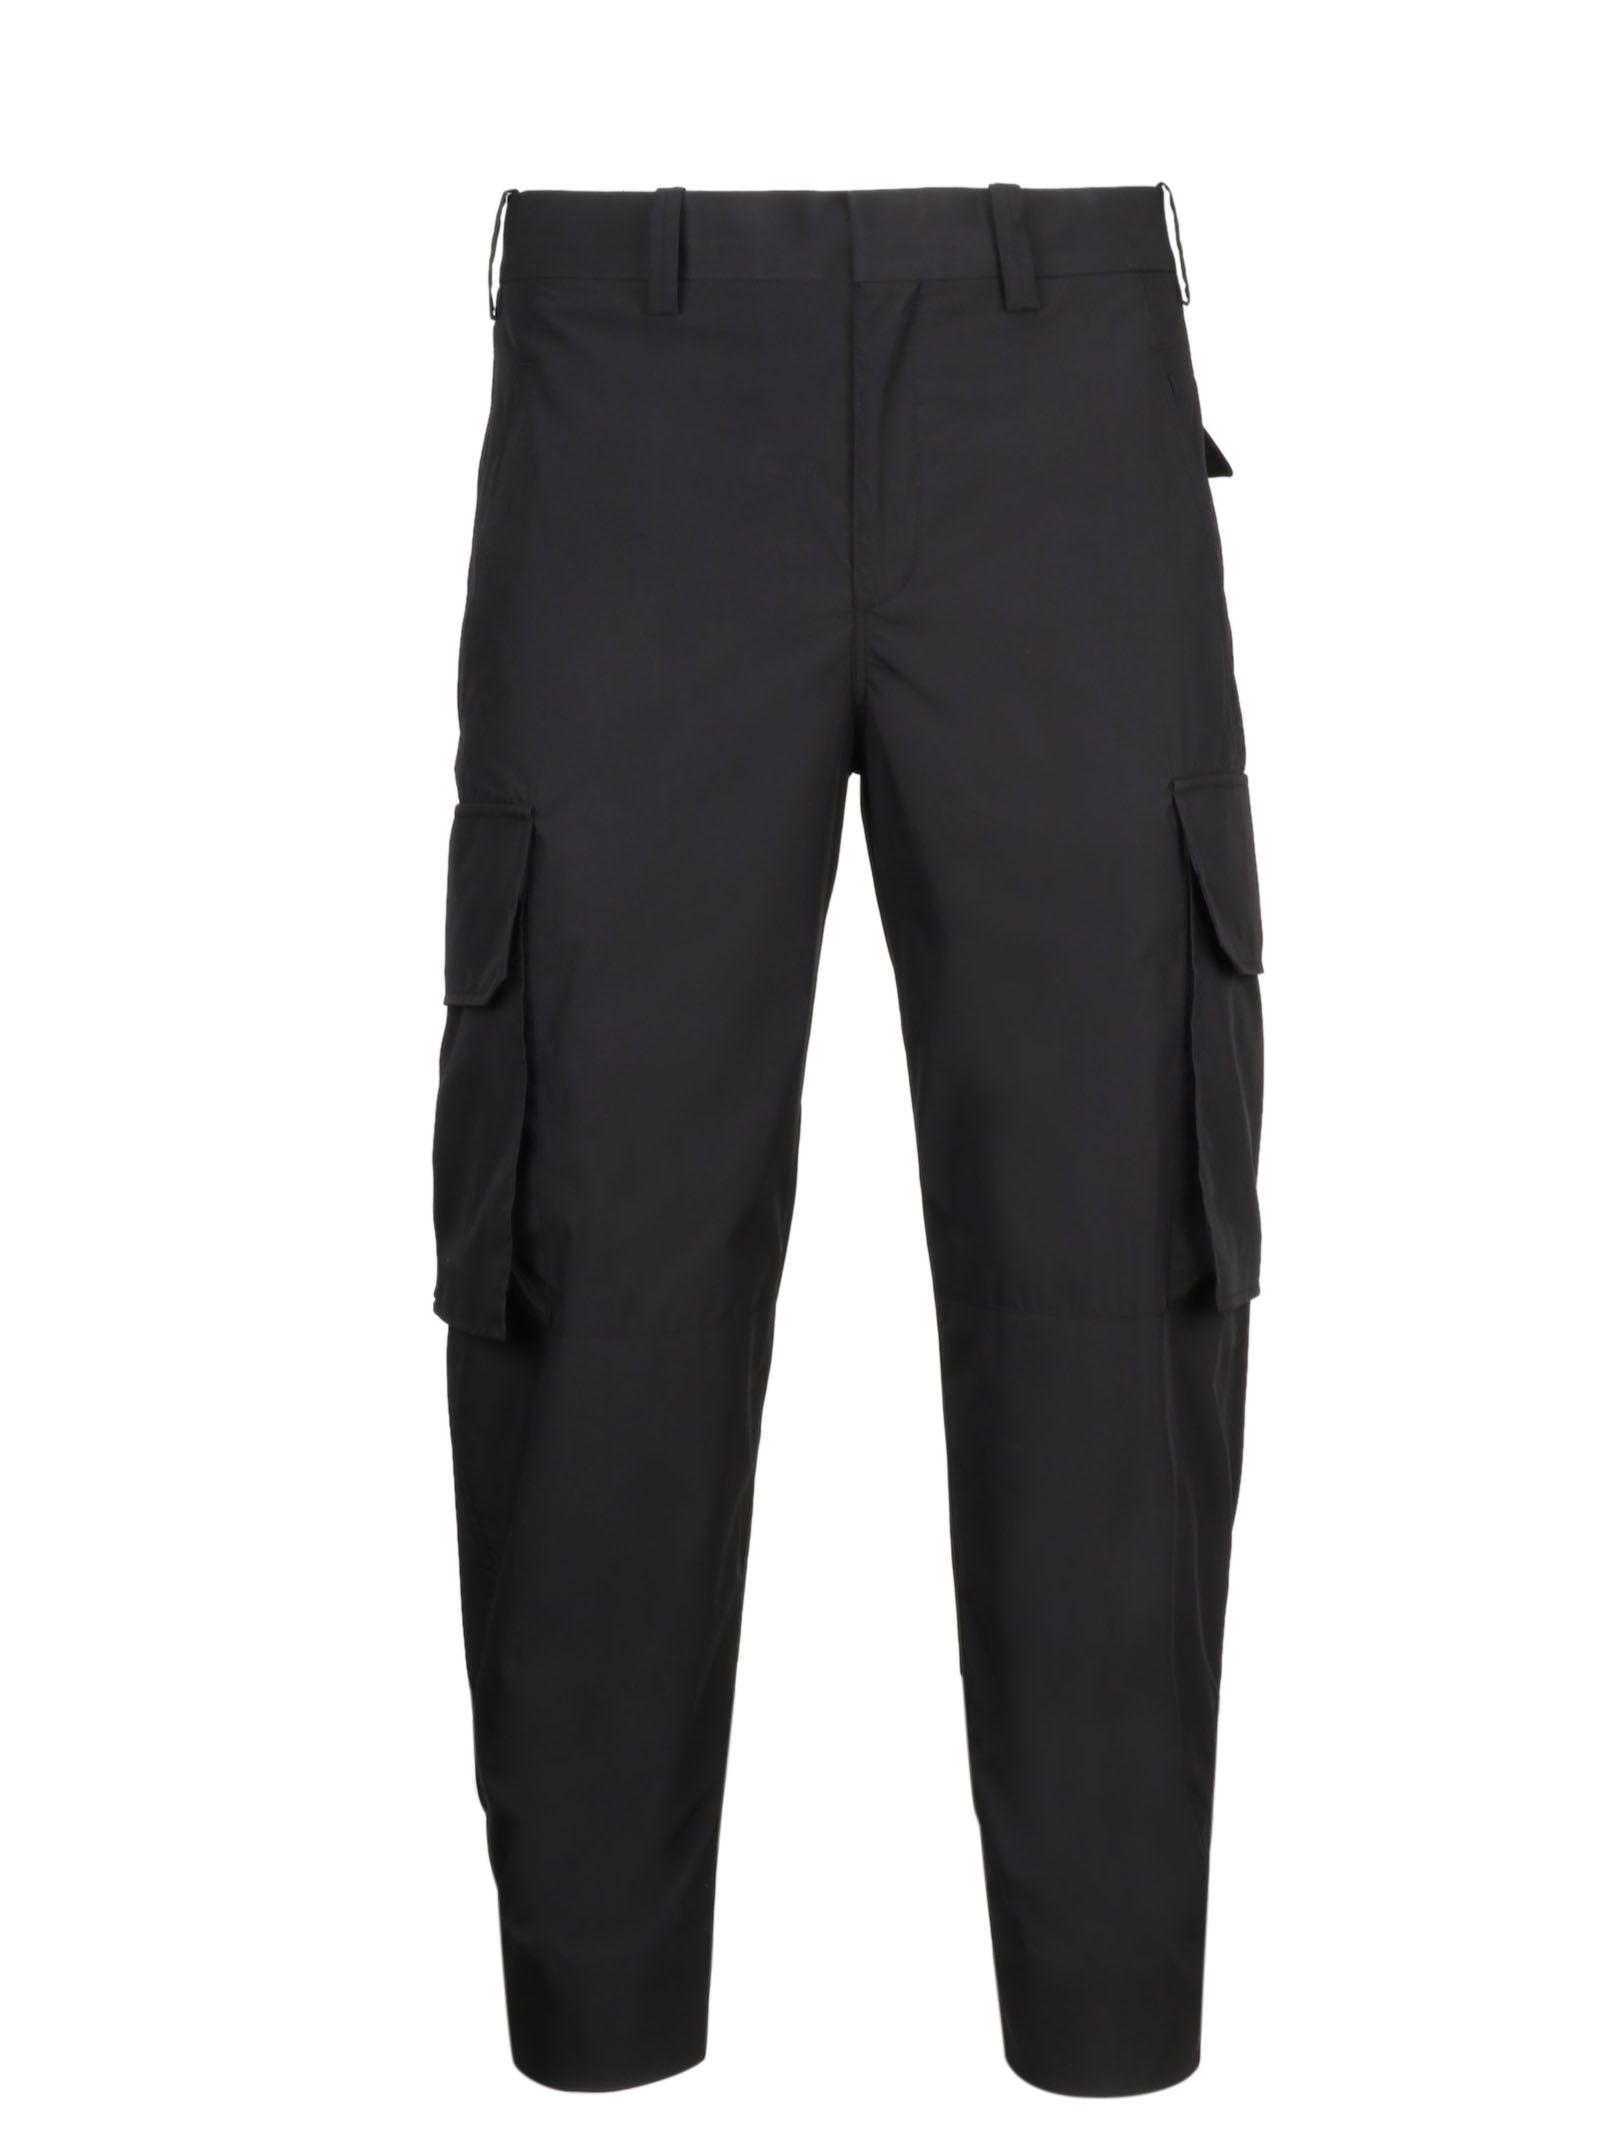 Neil Barrett Black Cotton Pants in Black for Men - Lyst